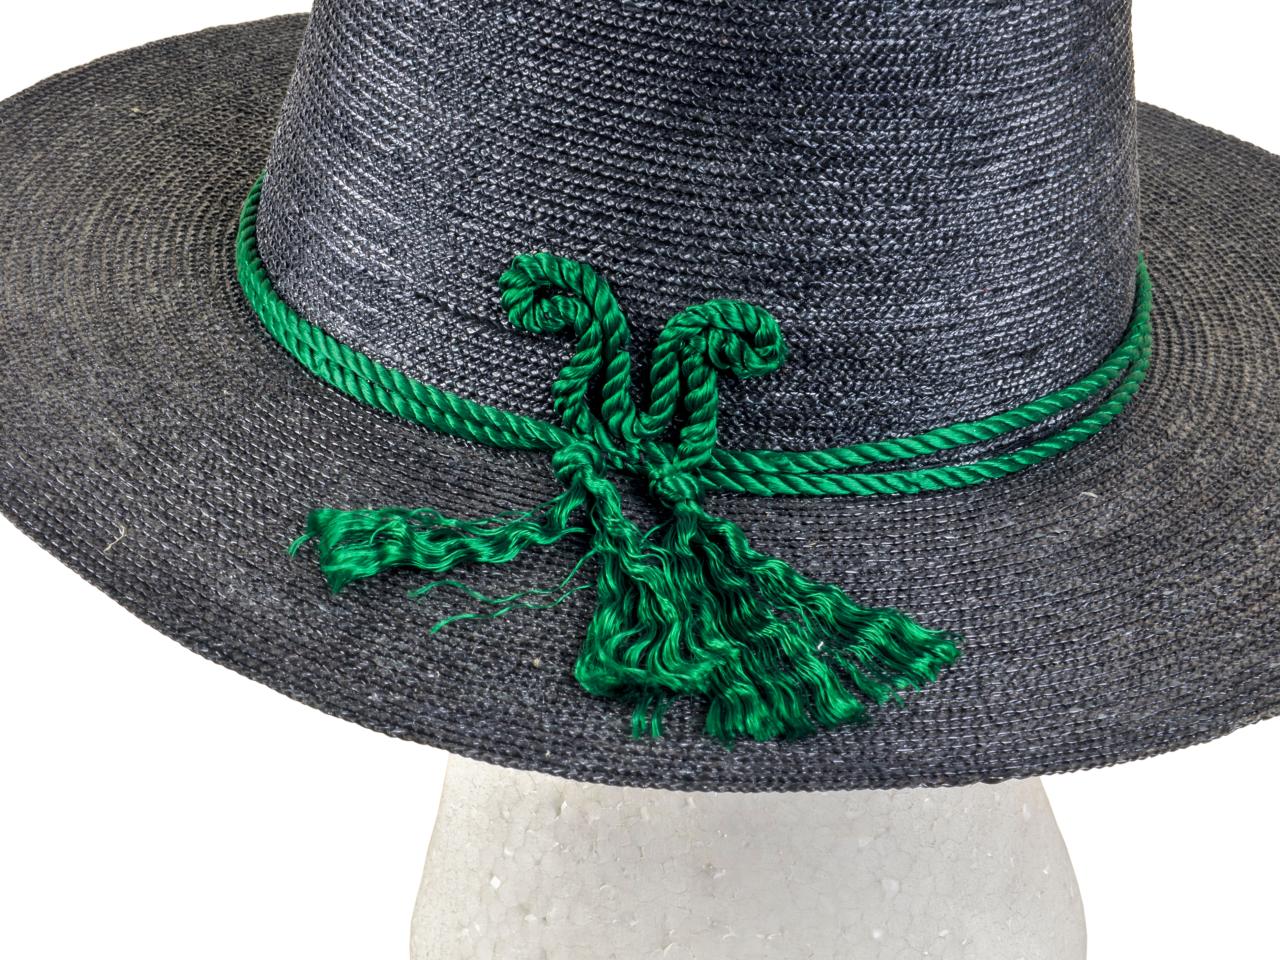 Detalle de ala recta y ornamentación de sombrero elegante de mujer en paja teatina trenzada